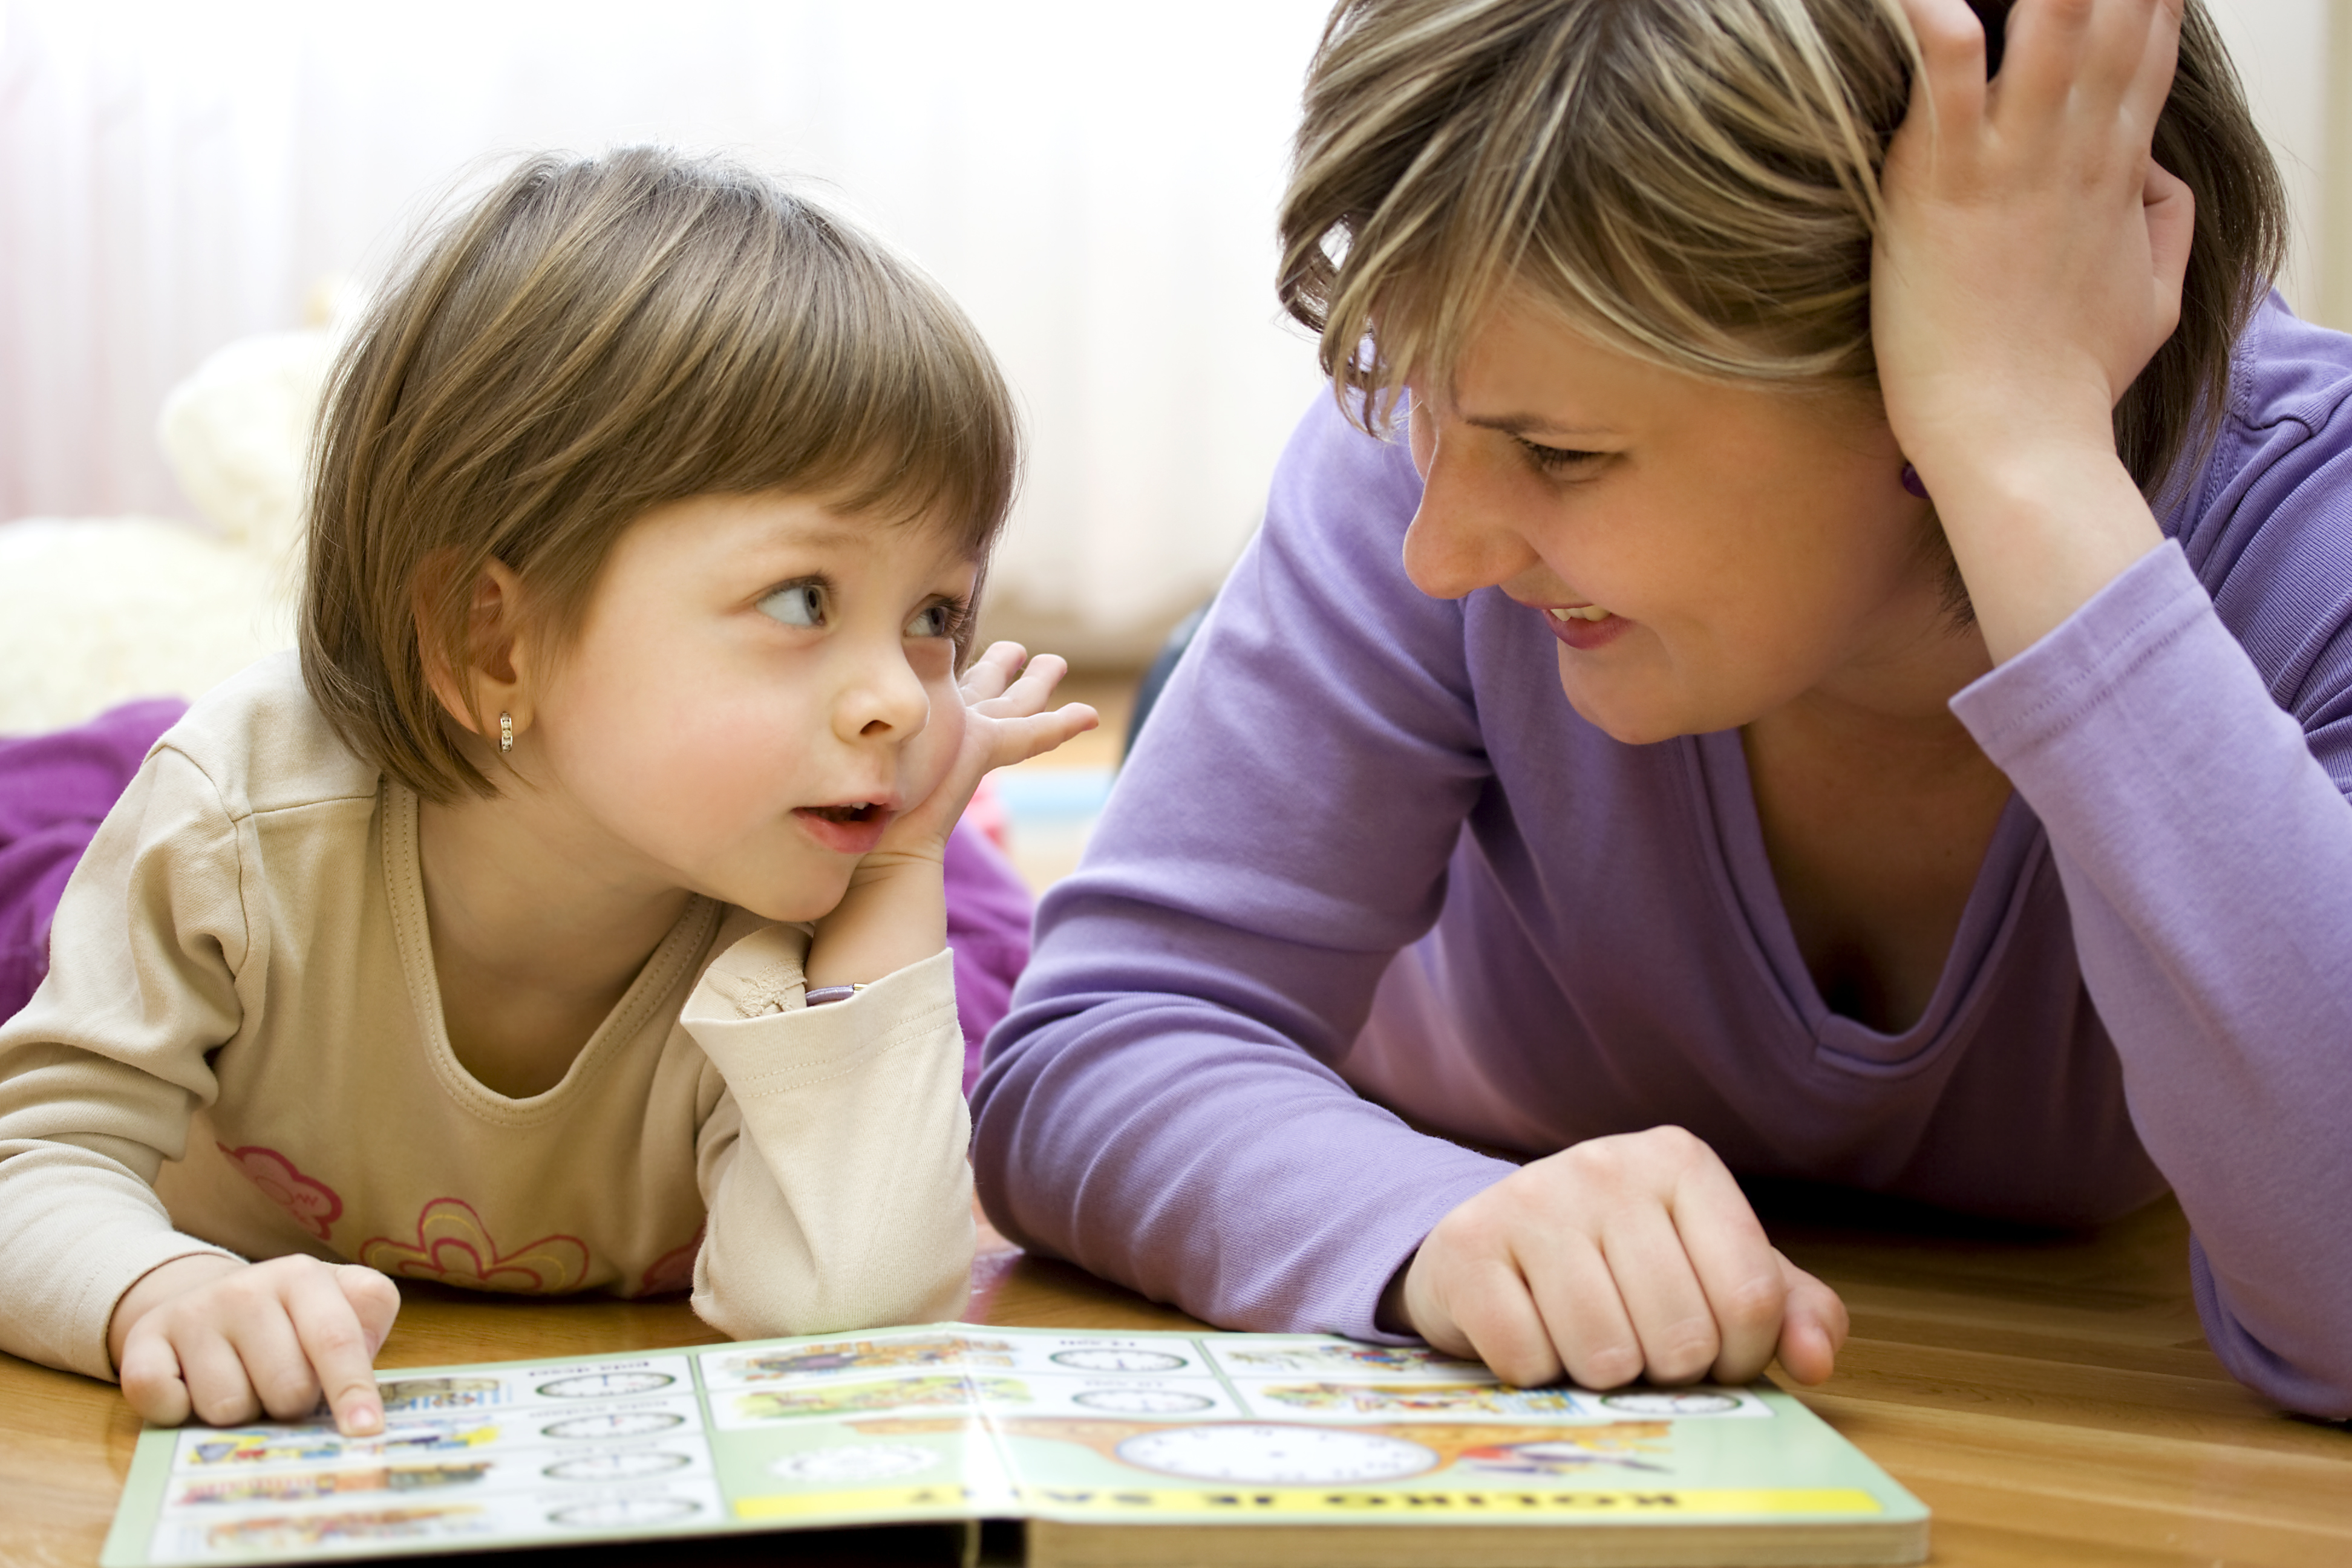   Cách luyện trí nhớ đơn giản nhất cho trẻ 1-3 tuổi